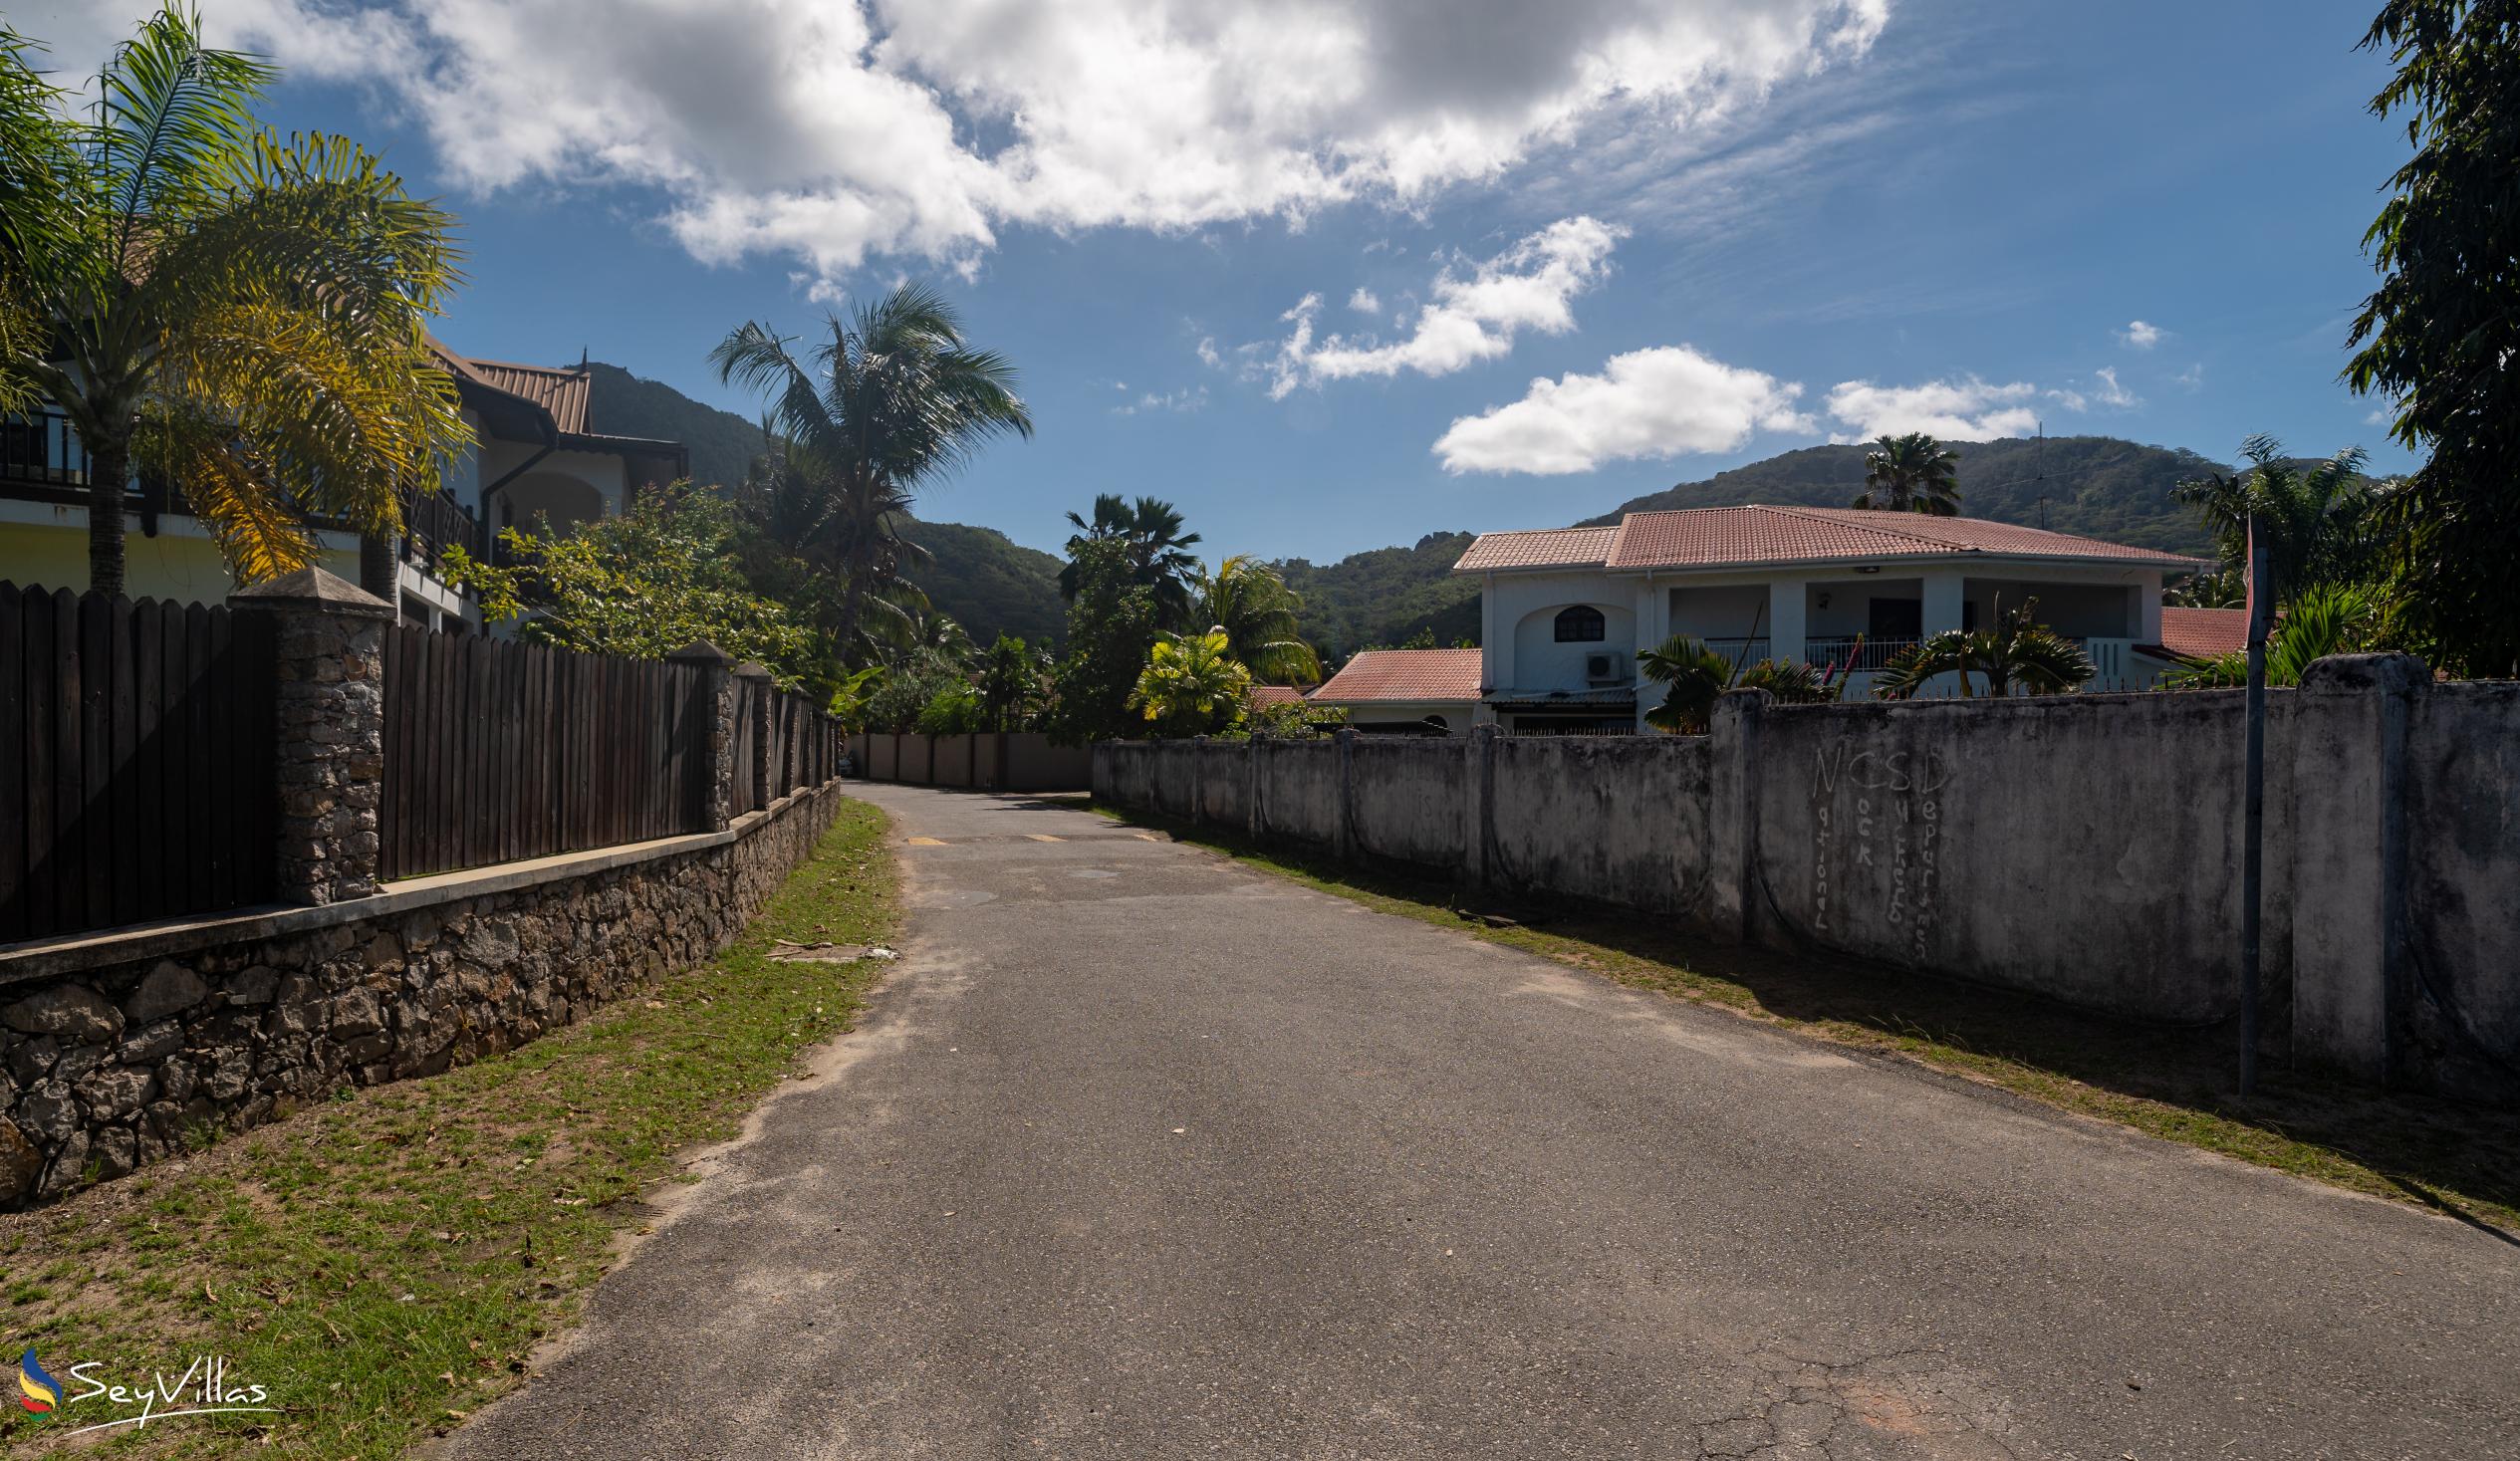 Foto 43: Villa Caballero - Posizione - Mahé (Seychelles)